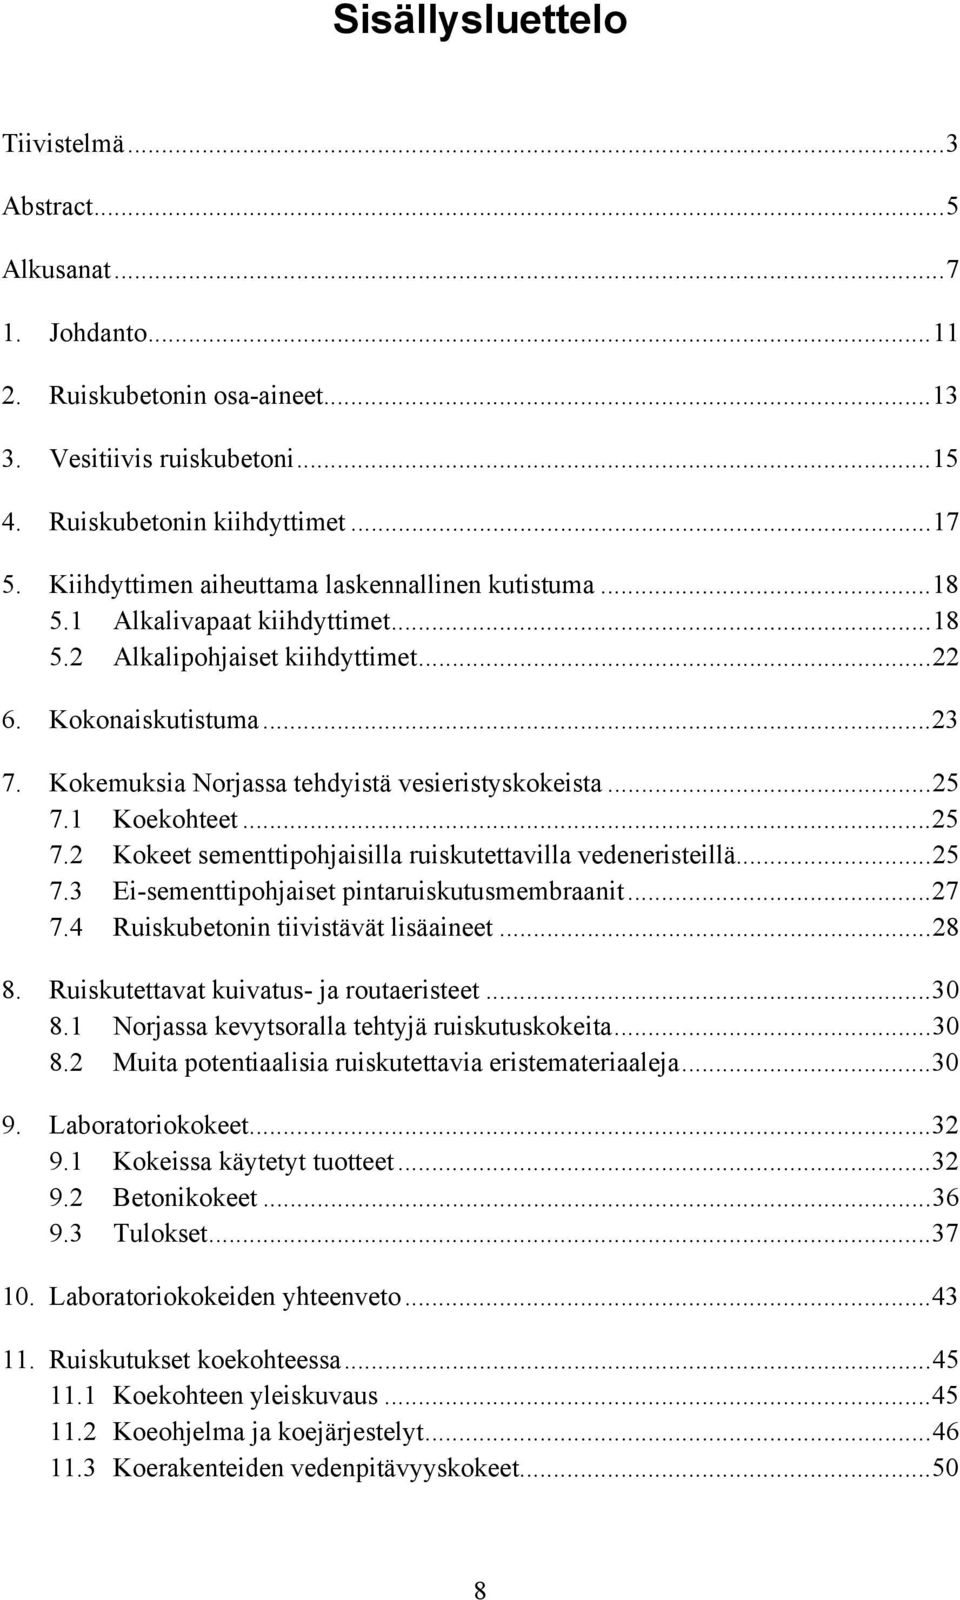 Kokemuksia Norjassa tehdyistä vesieristyskokeista...25 7.1 Koekohteet...25 7.2 Kokeet sementtipohjaisilla ruiskutettavilla vedeneristeillä...25 7.3 Ei-sementtipohjaiset pintaruiskutusmembraanit...27 7.